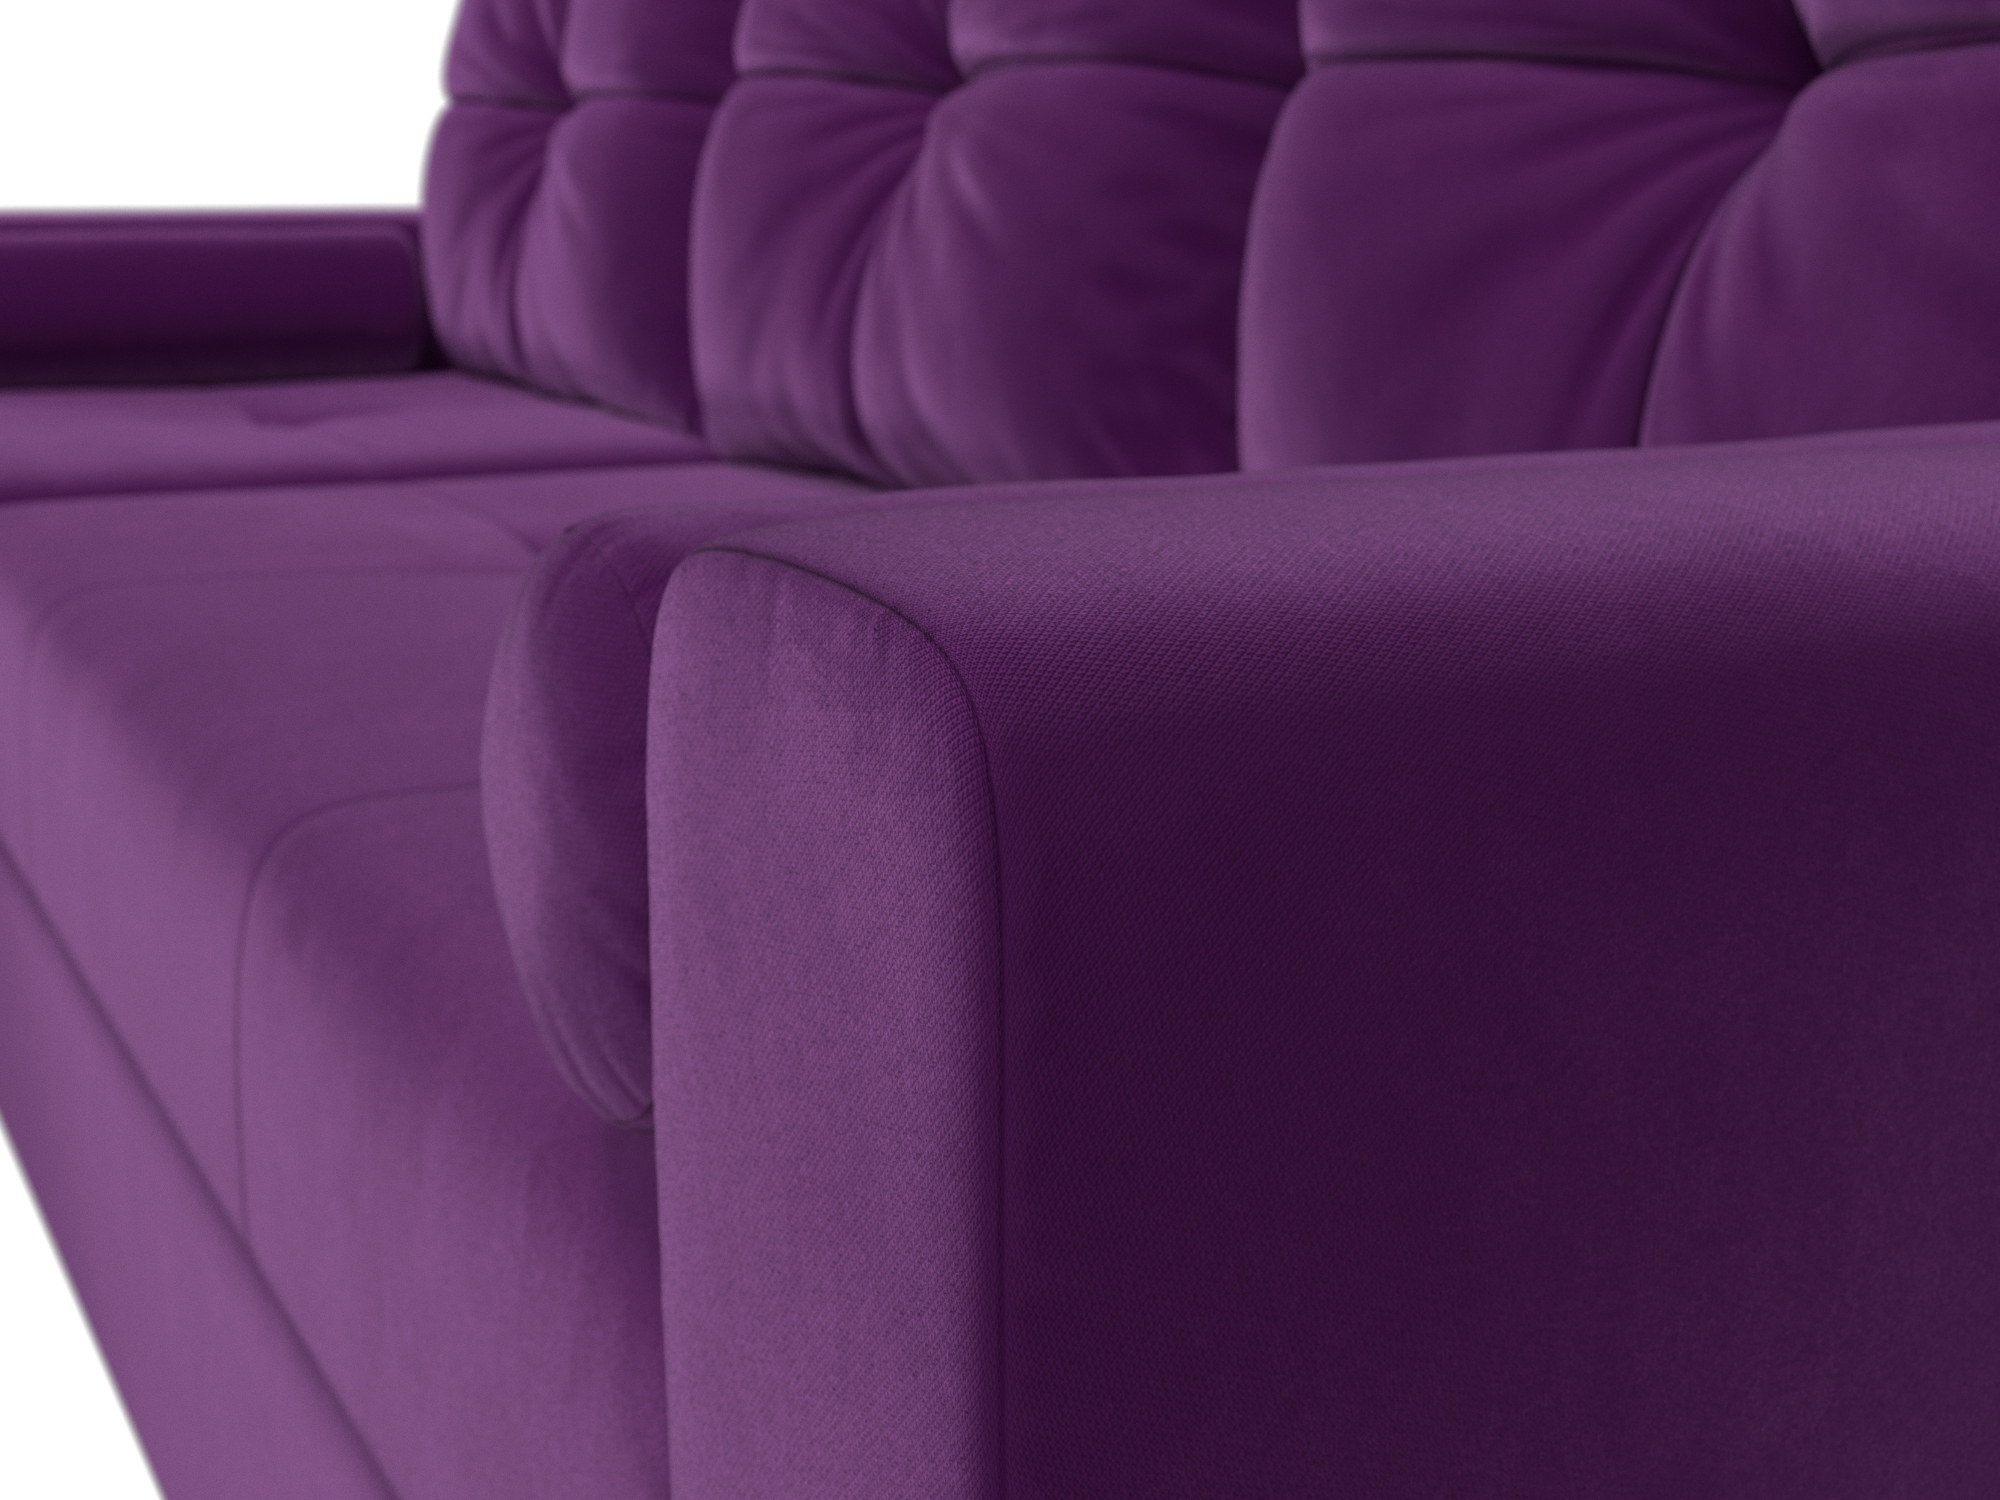 Угловой диван Верона левый угол (Фиолетовый)